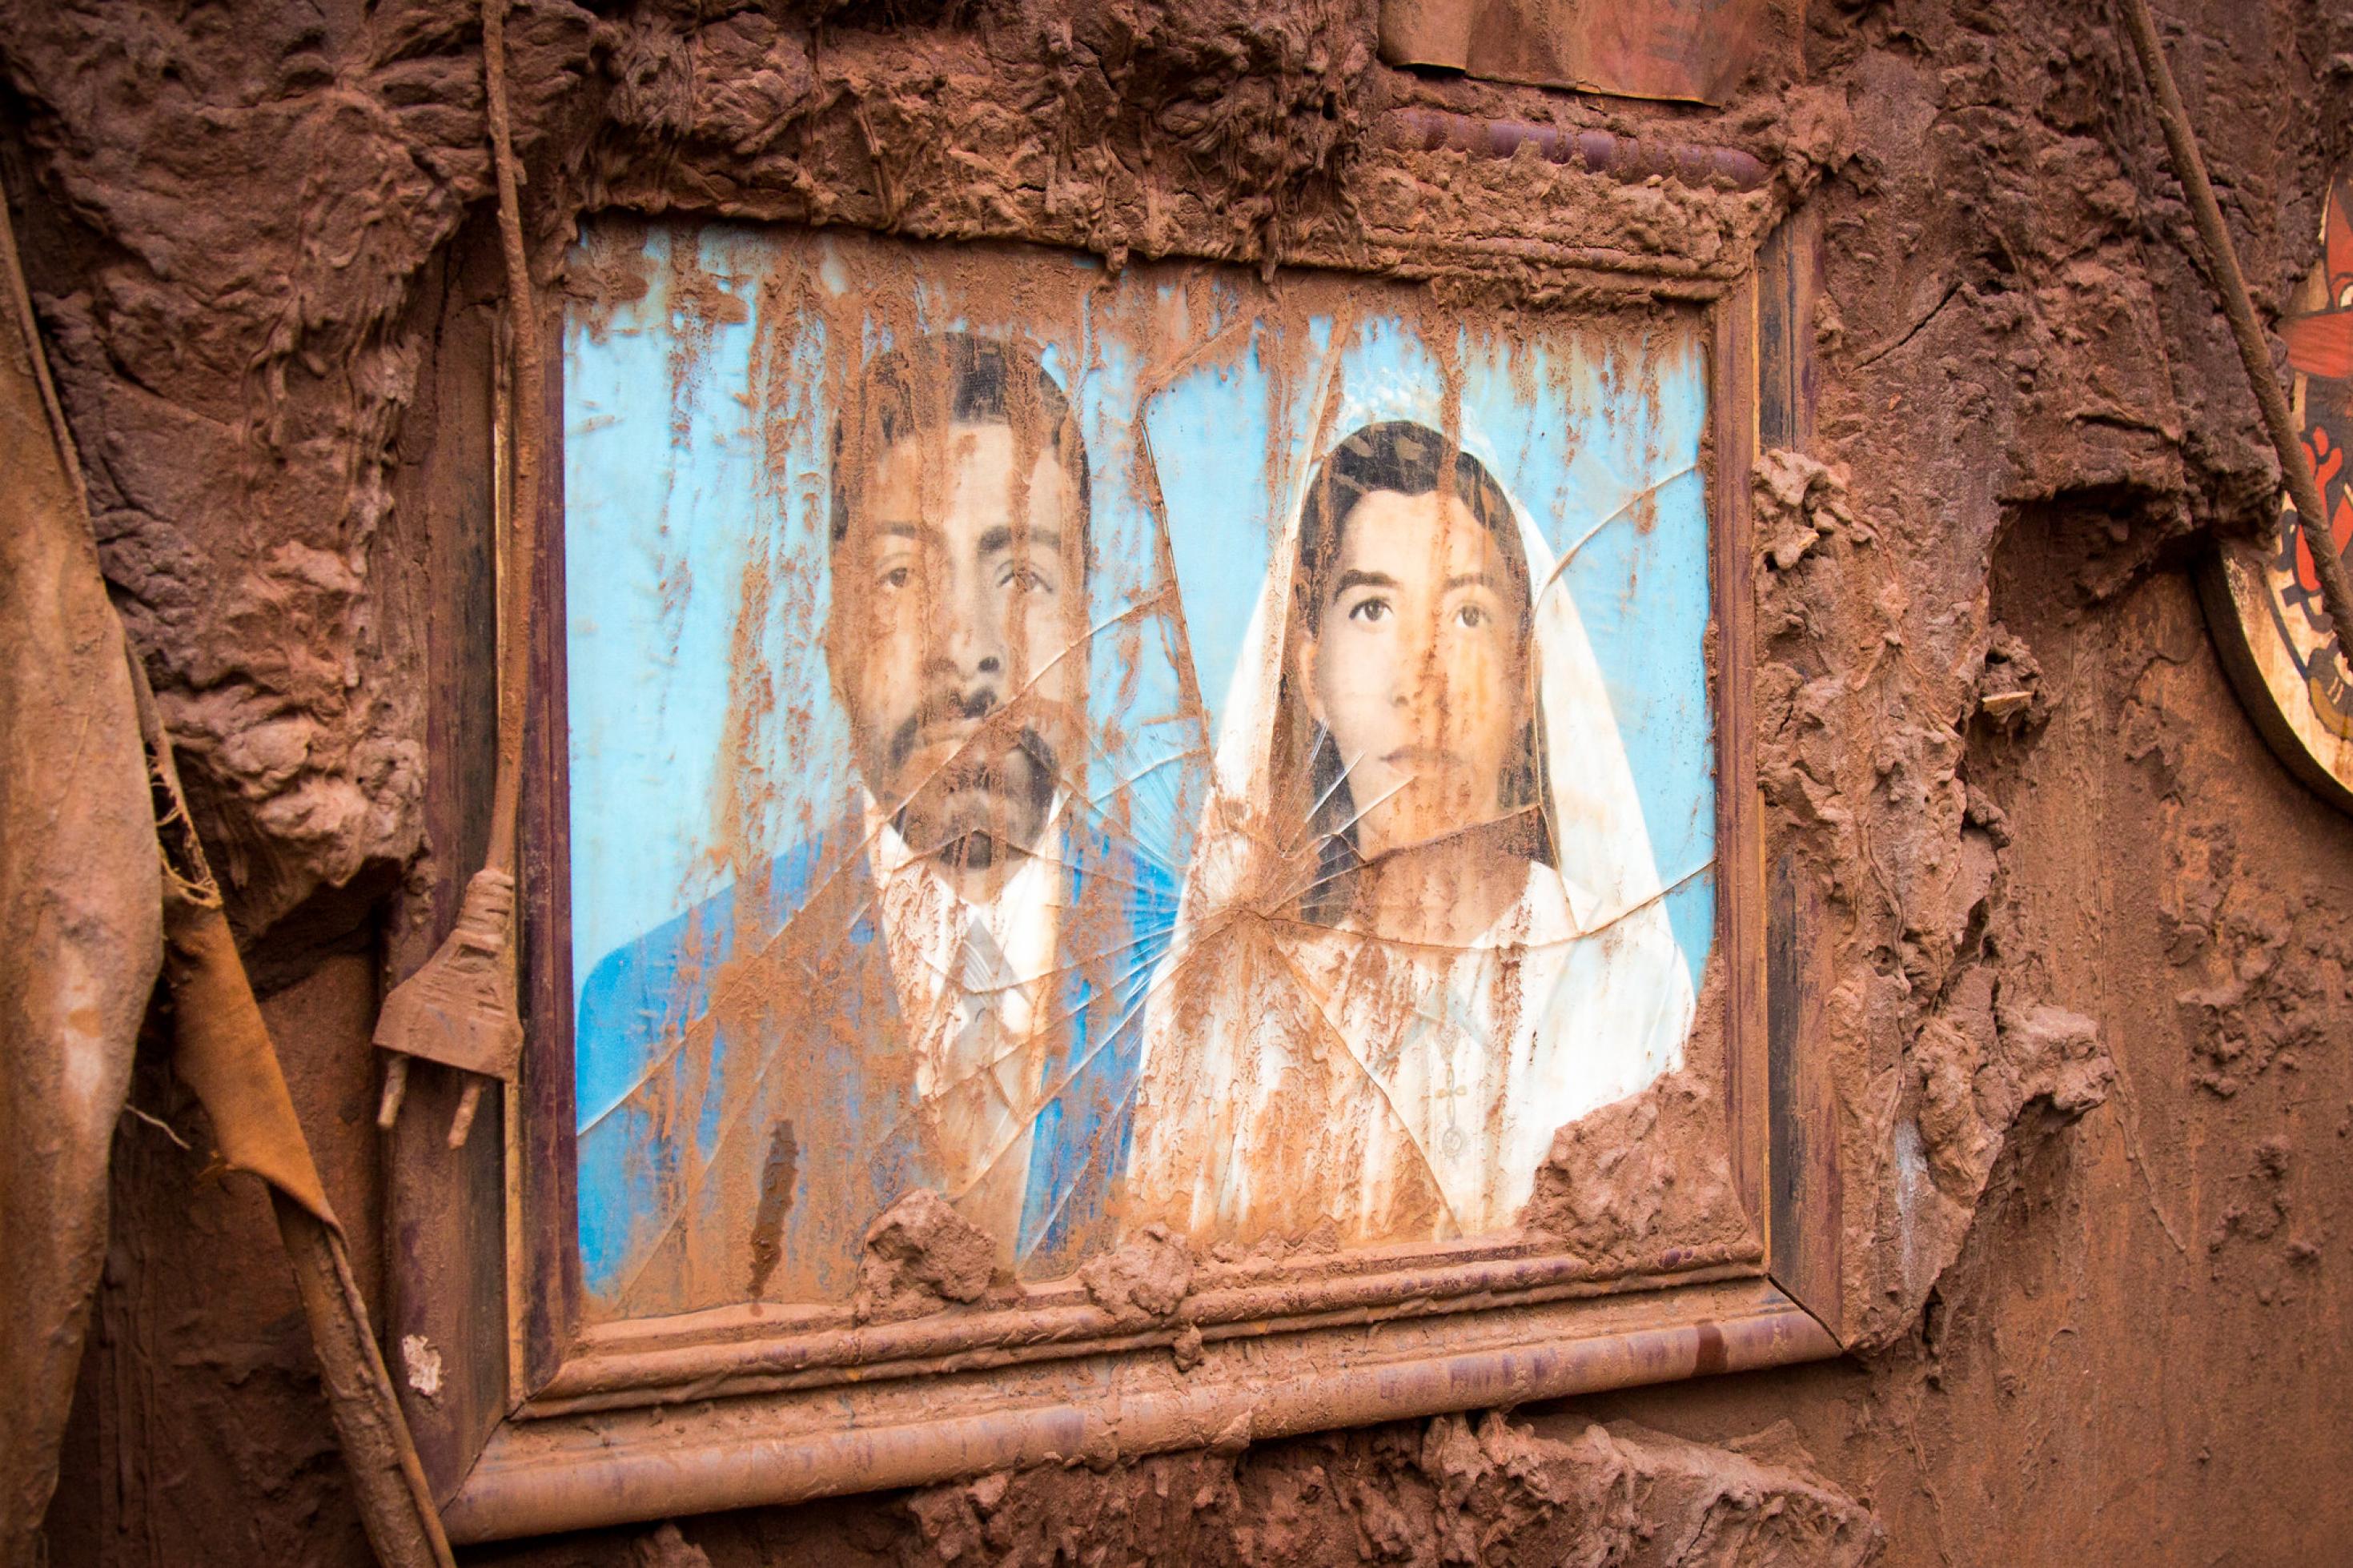 Ein Hochzeitsfoto hängt schlammüberströmt an einer Wand. 19 Menschen starben 2015 bei einer der schlimmsten Umweltkatastrophen in der Geschichte Brasiliens.